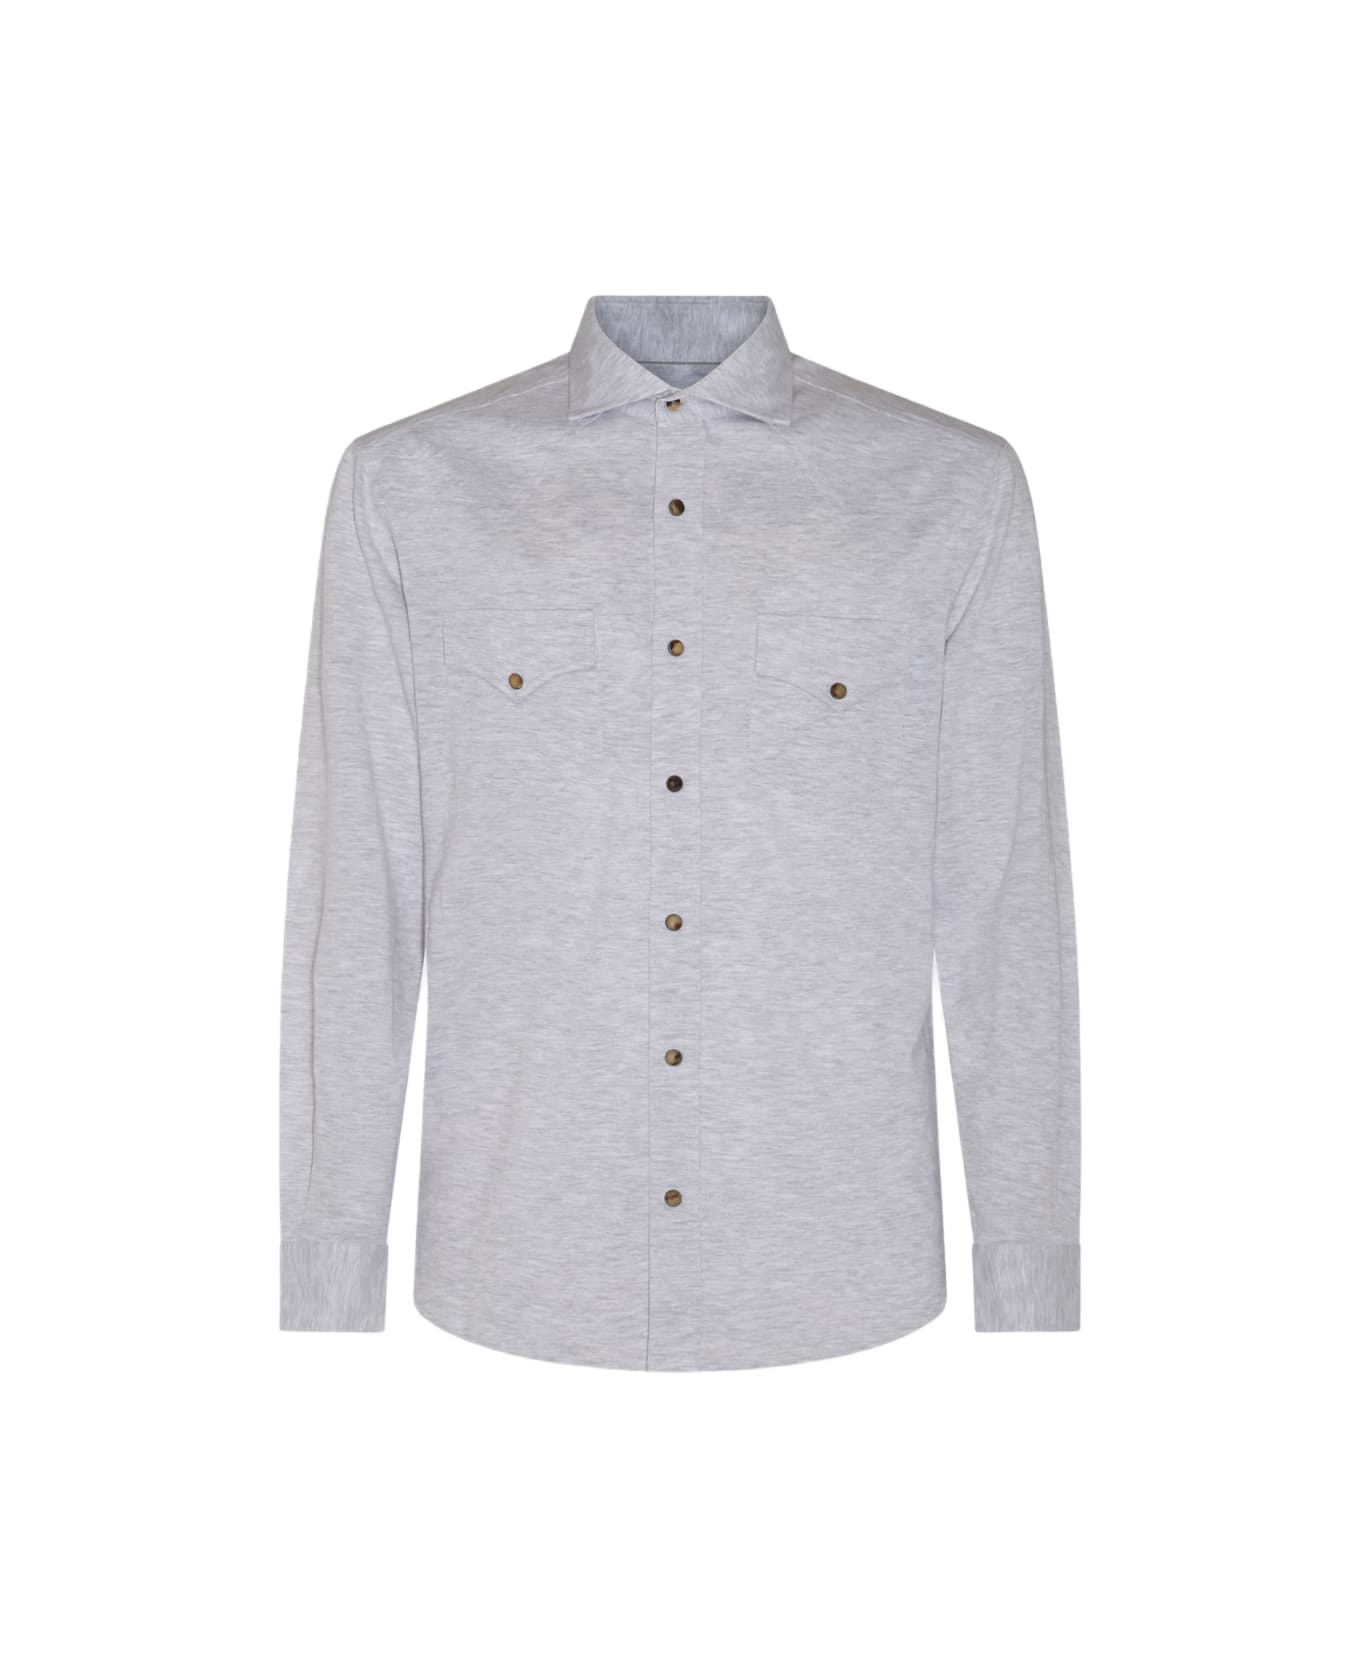 Brunello Cucinelli Grey Linen Blend Shirt - Grey